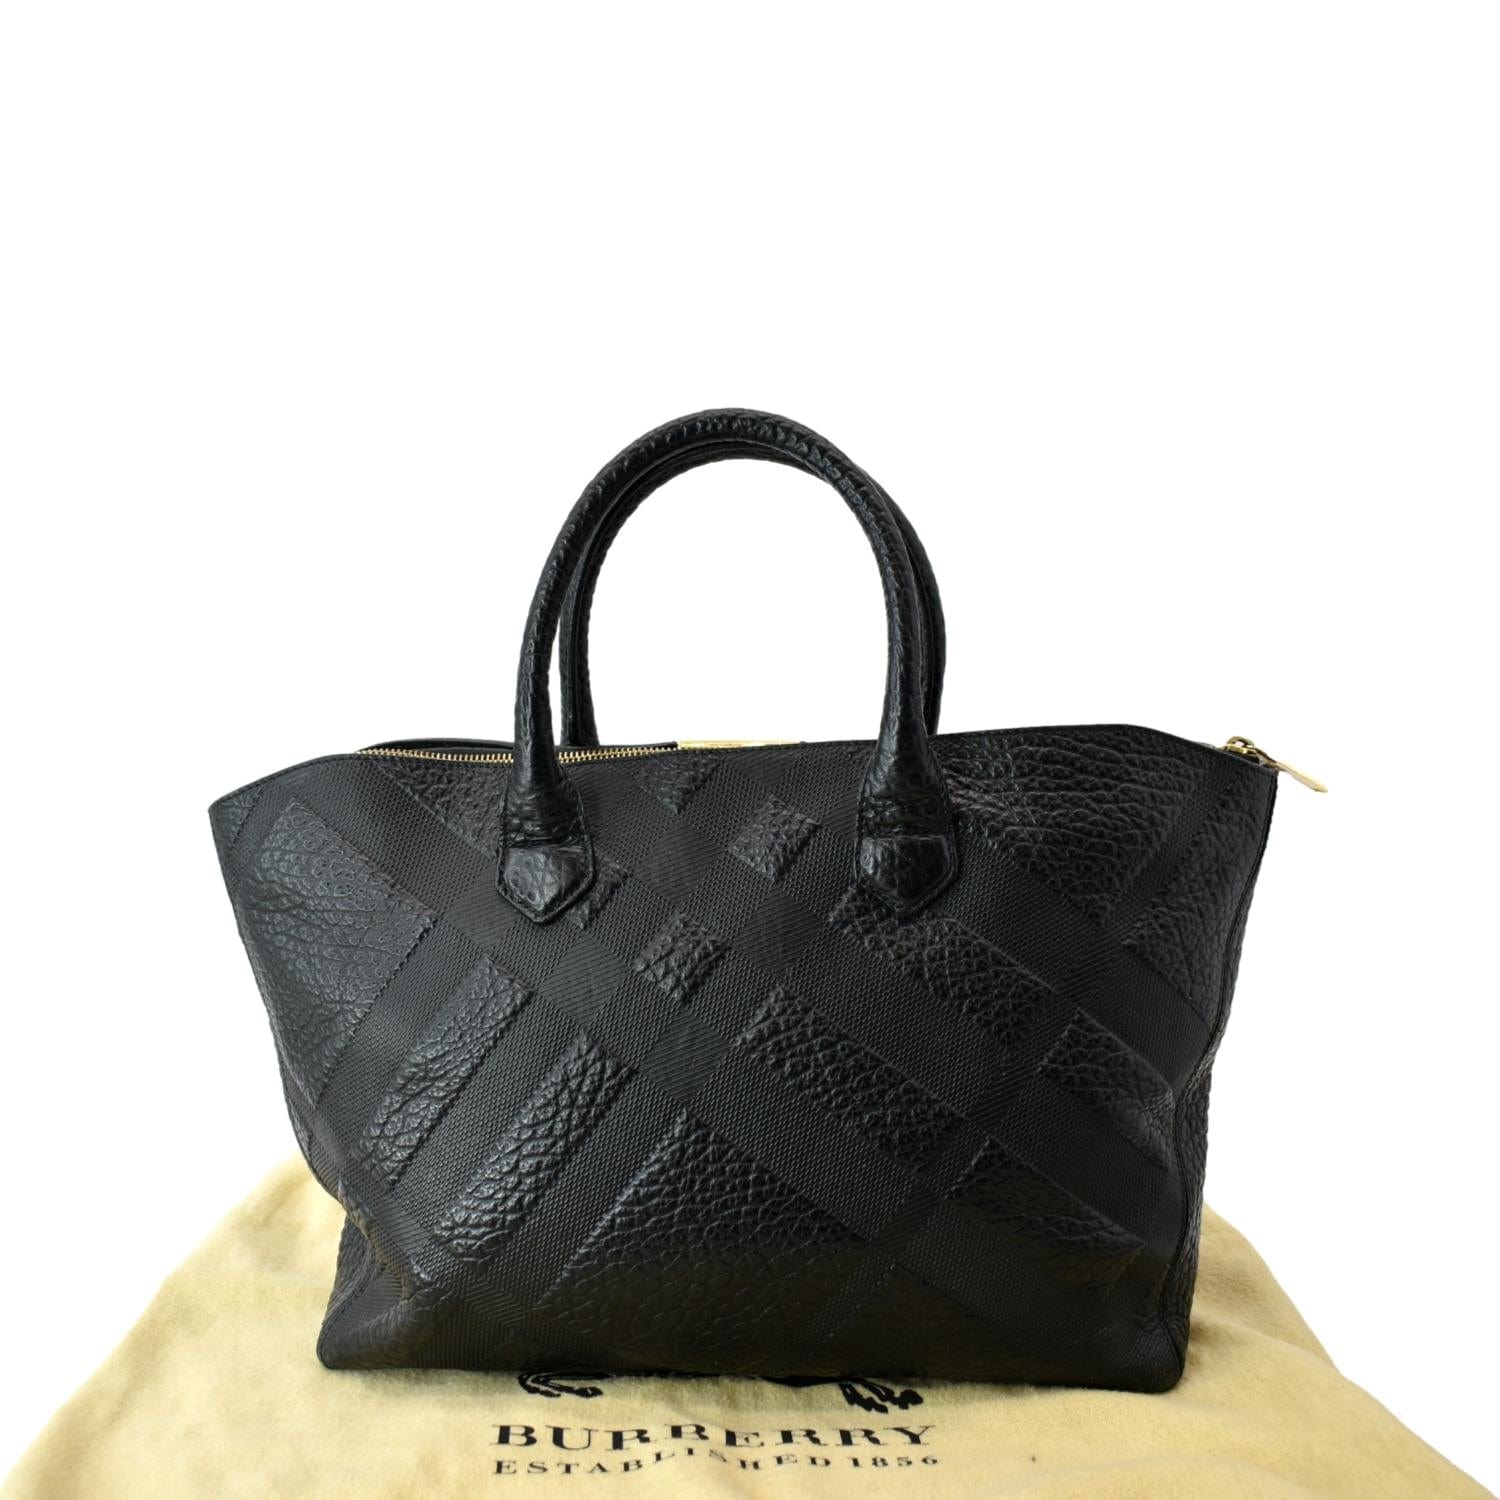 Burberry Handbag!!!  Burberry handbags, Handbag, Stylish purse